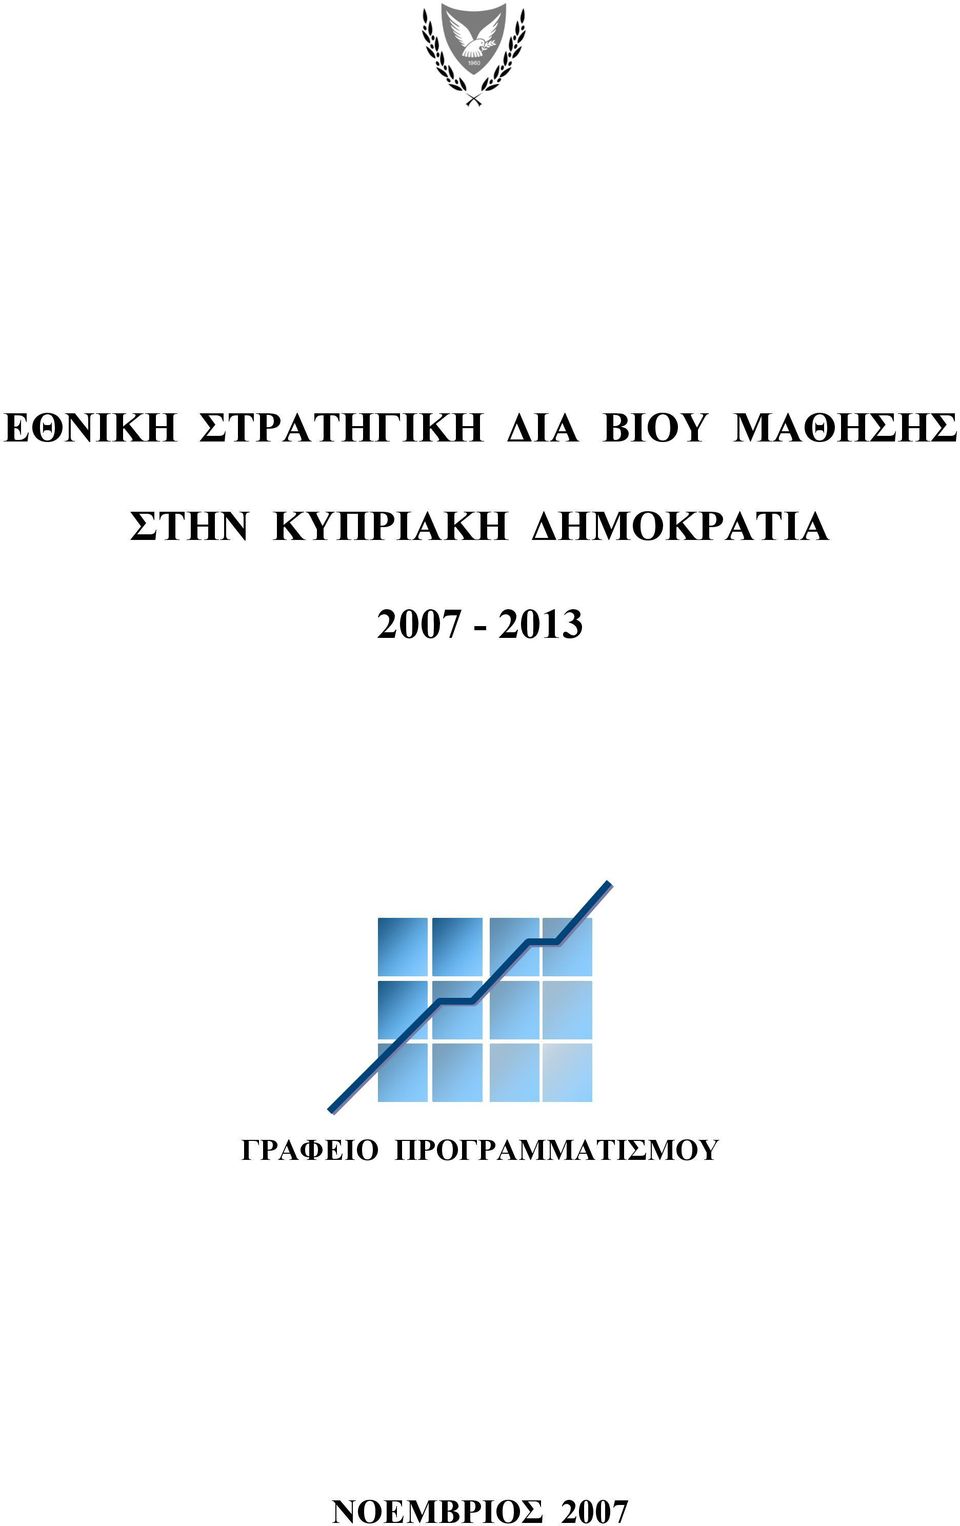 ΔΗΜΟΚΡΑΤΙΑ 2007-2013